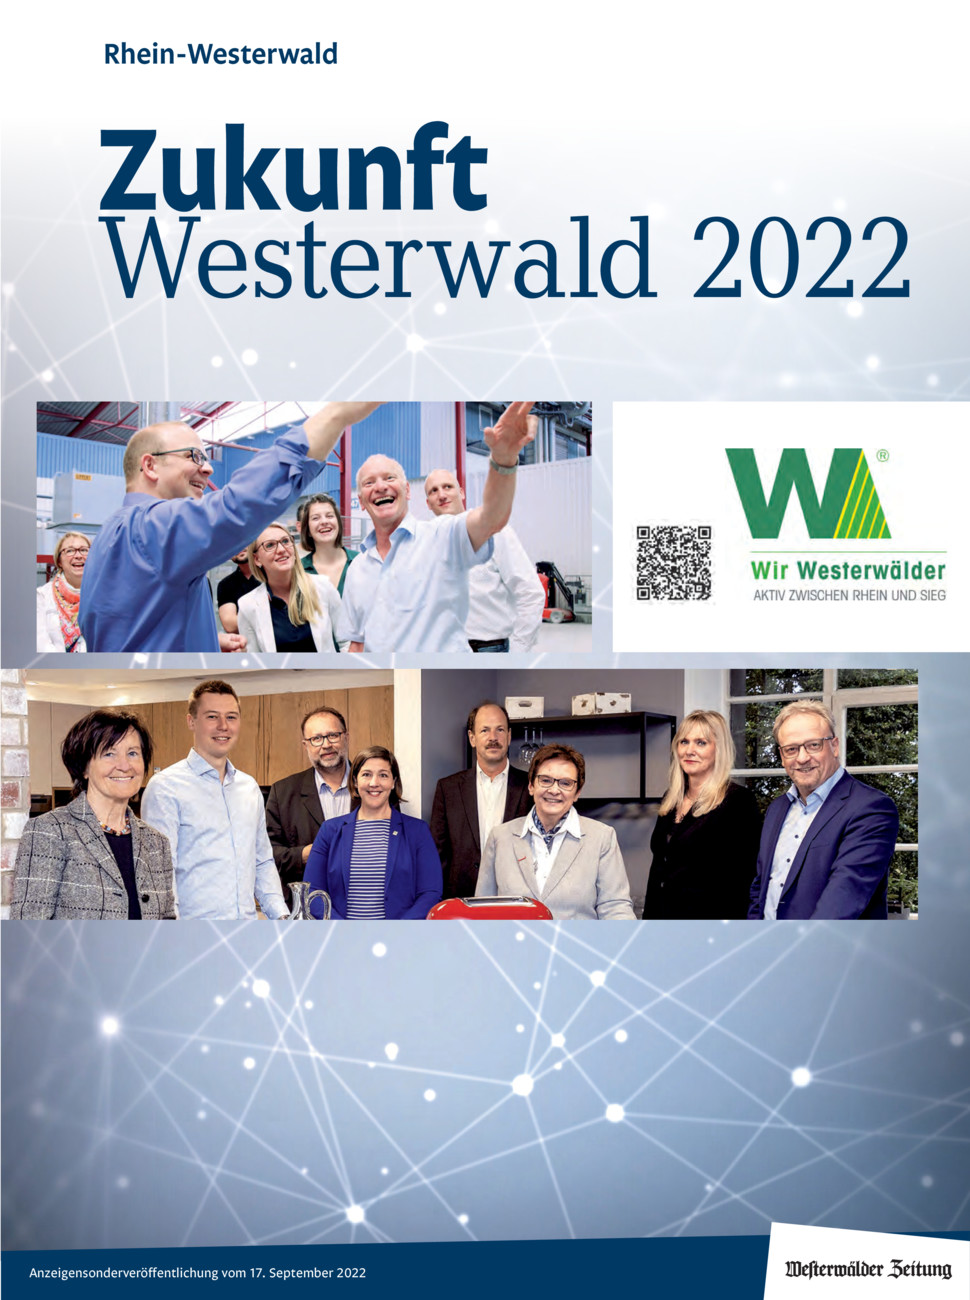 Zukunft Westerwald 2022